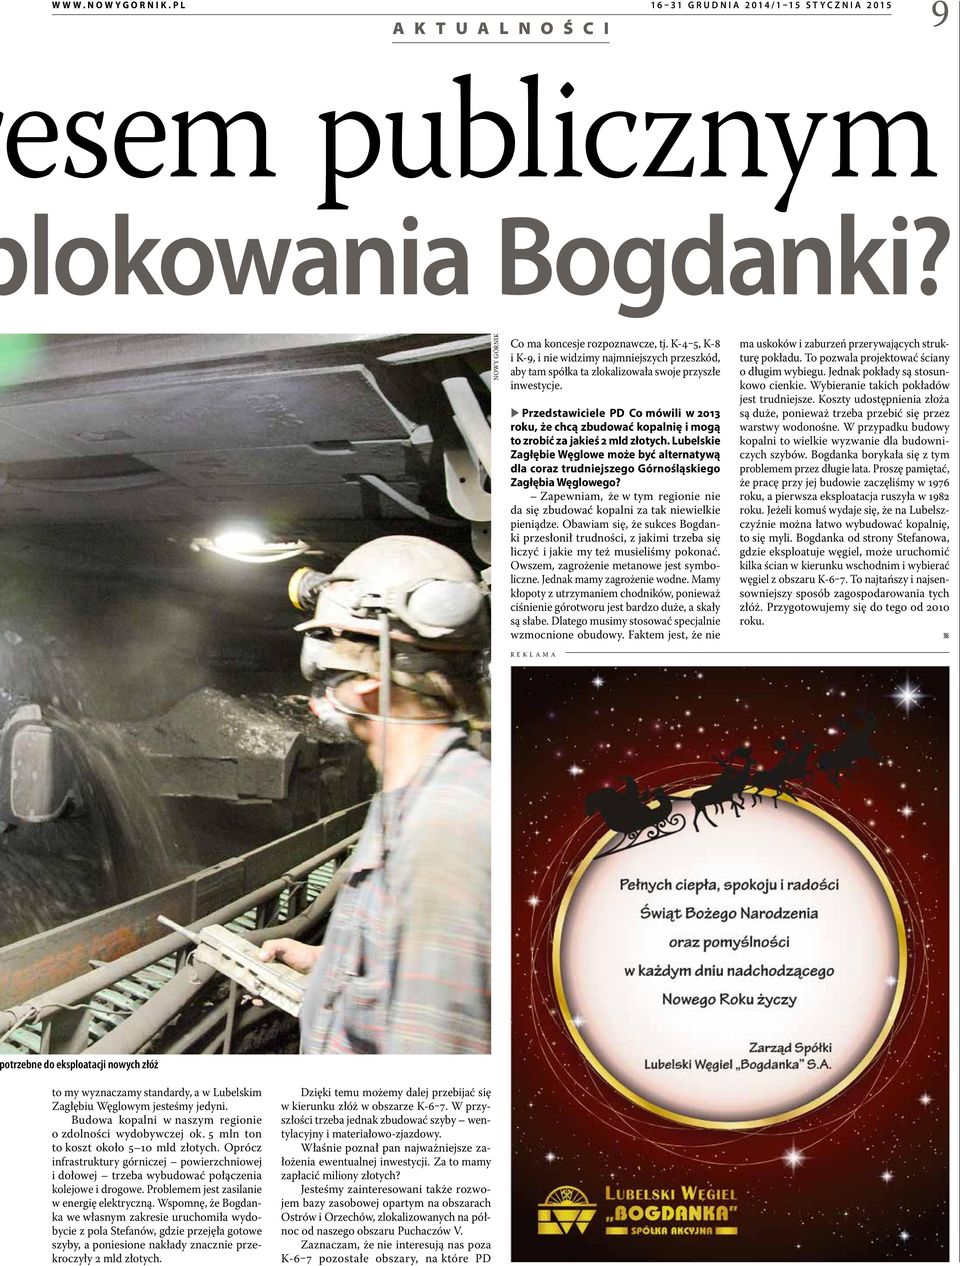 XXPrzedstawiciele PD Co mówili w 2013 roku, że chcą zbudować kopalnię i mogą to zrobić za jakieś 2 mld złotych.